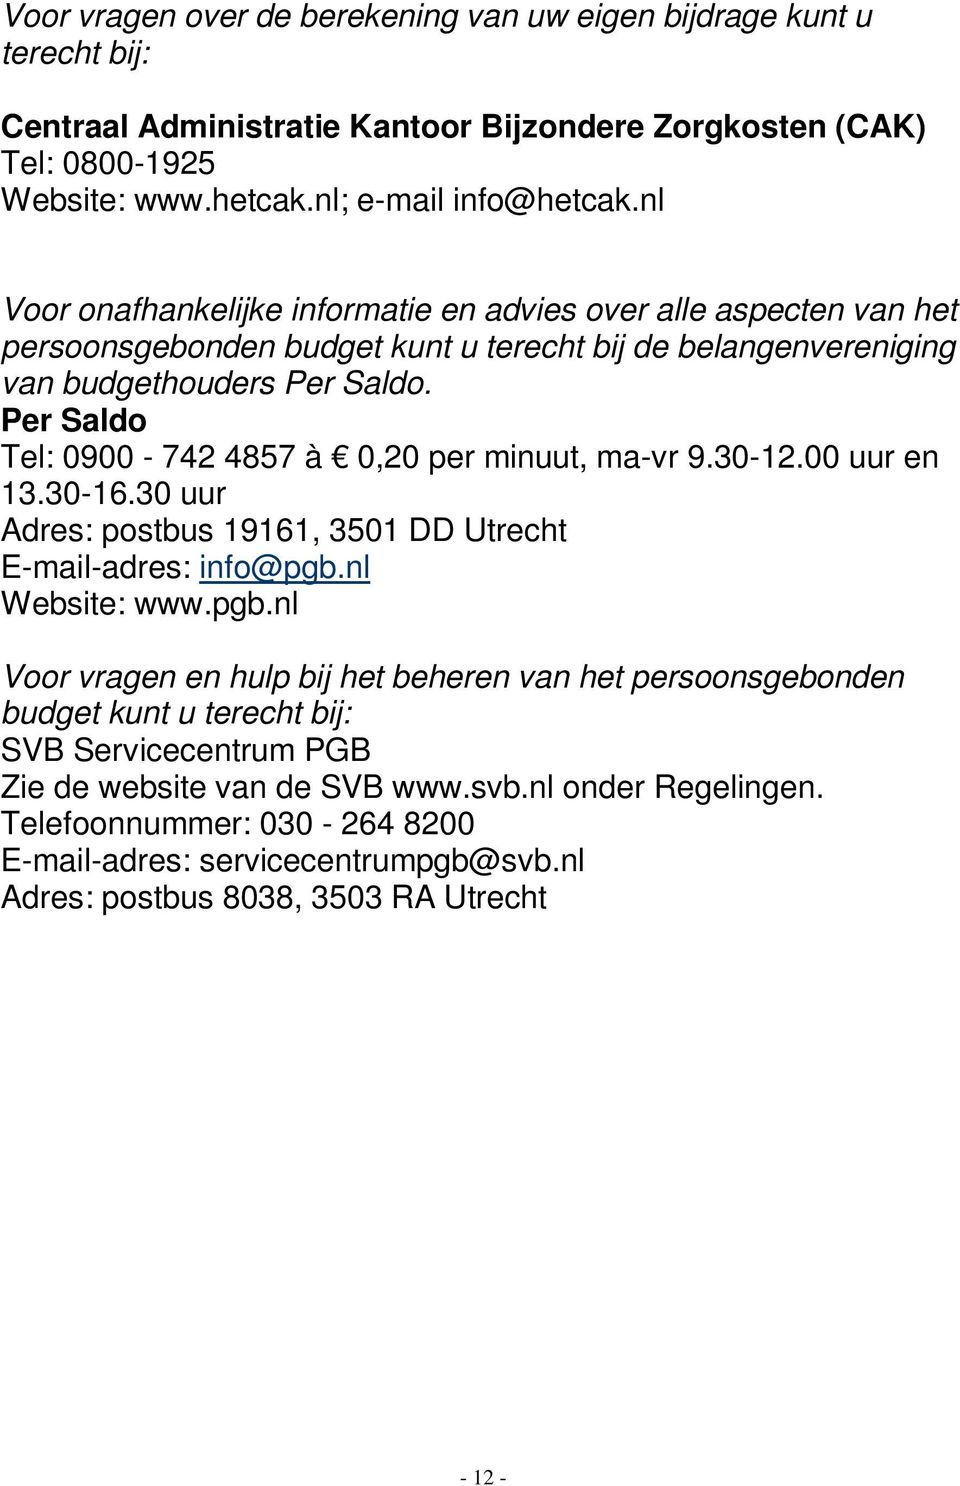 Per Saldo Tel: 0900-742 4857 à 0,20 per minuut, ma-vr 9.30-12.00 uur en 13.30-16.30 uur Adres: postbus 19161, 3501 DD Utrecht E-mail-adres: info@pgb.